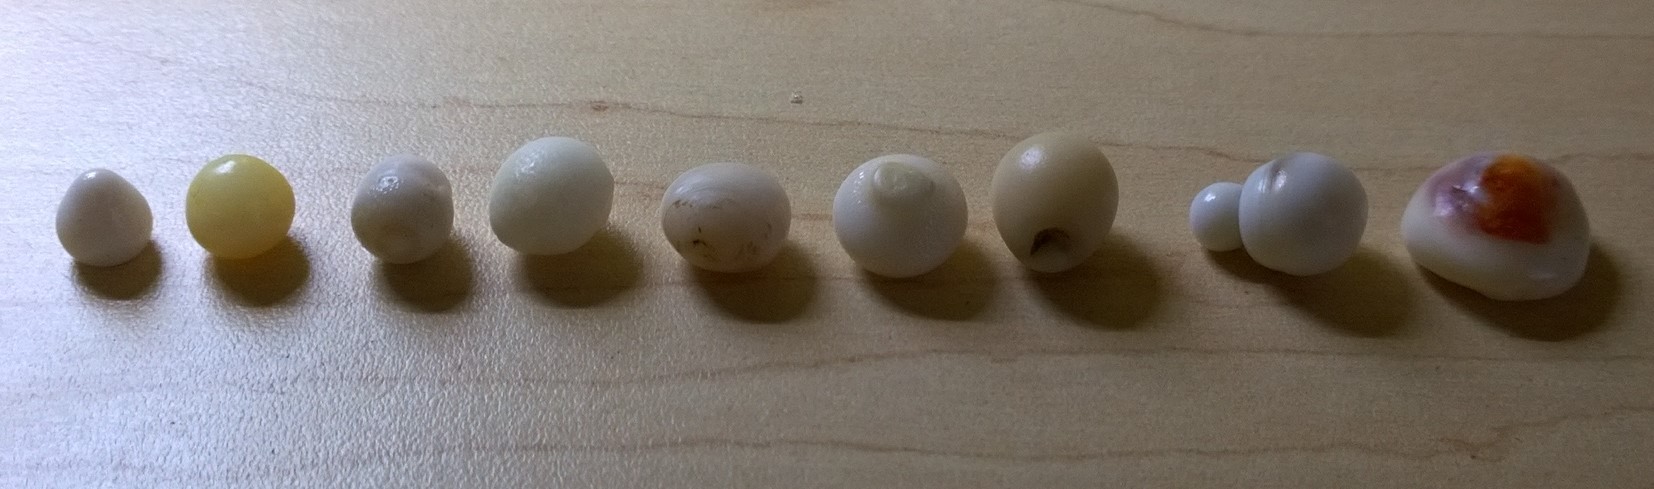 Natural Clam Pearls